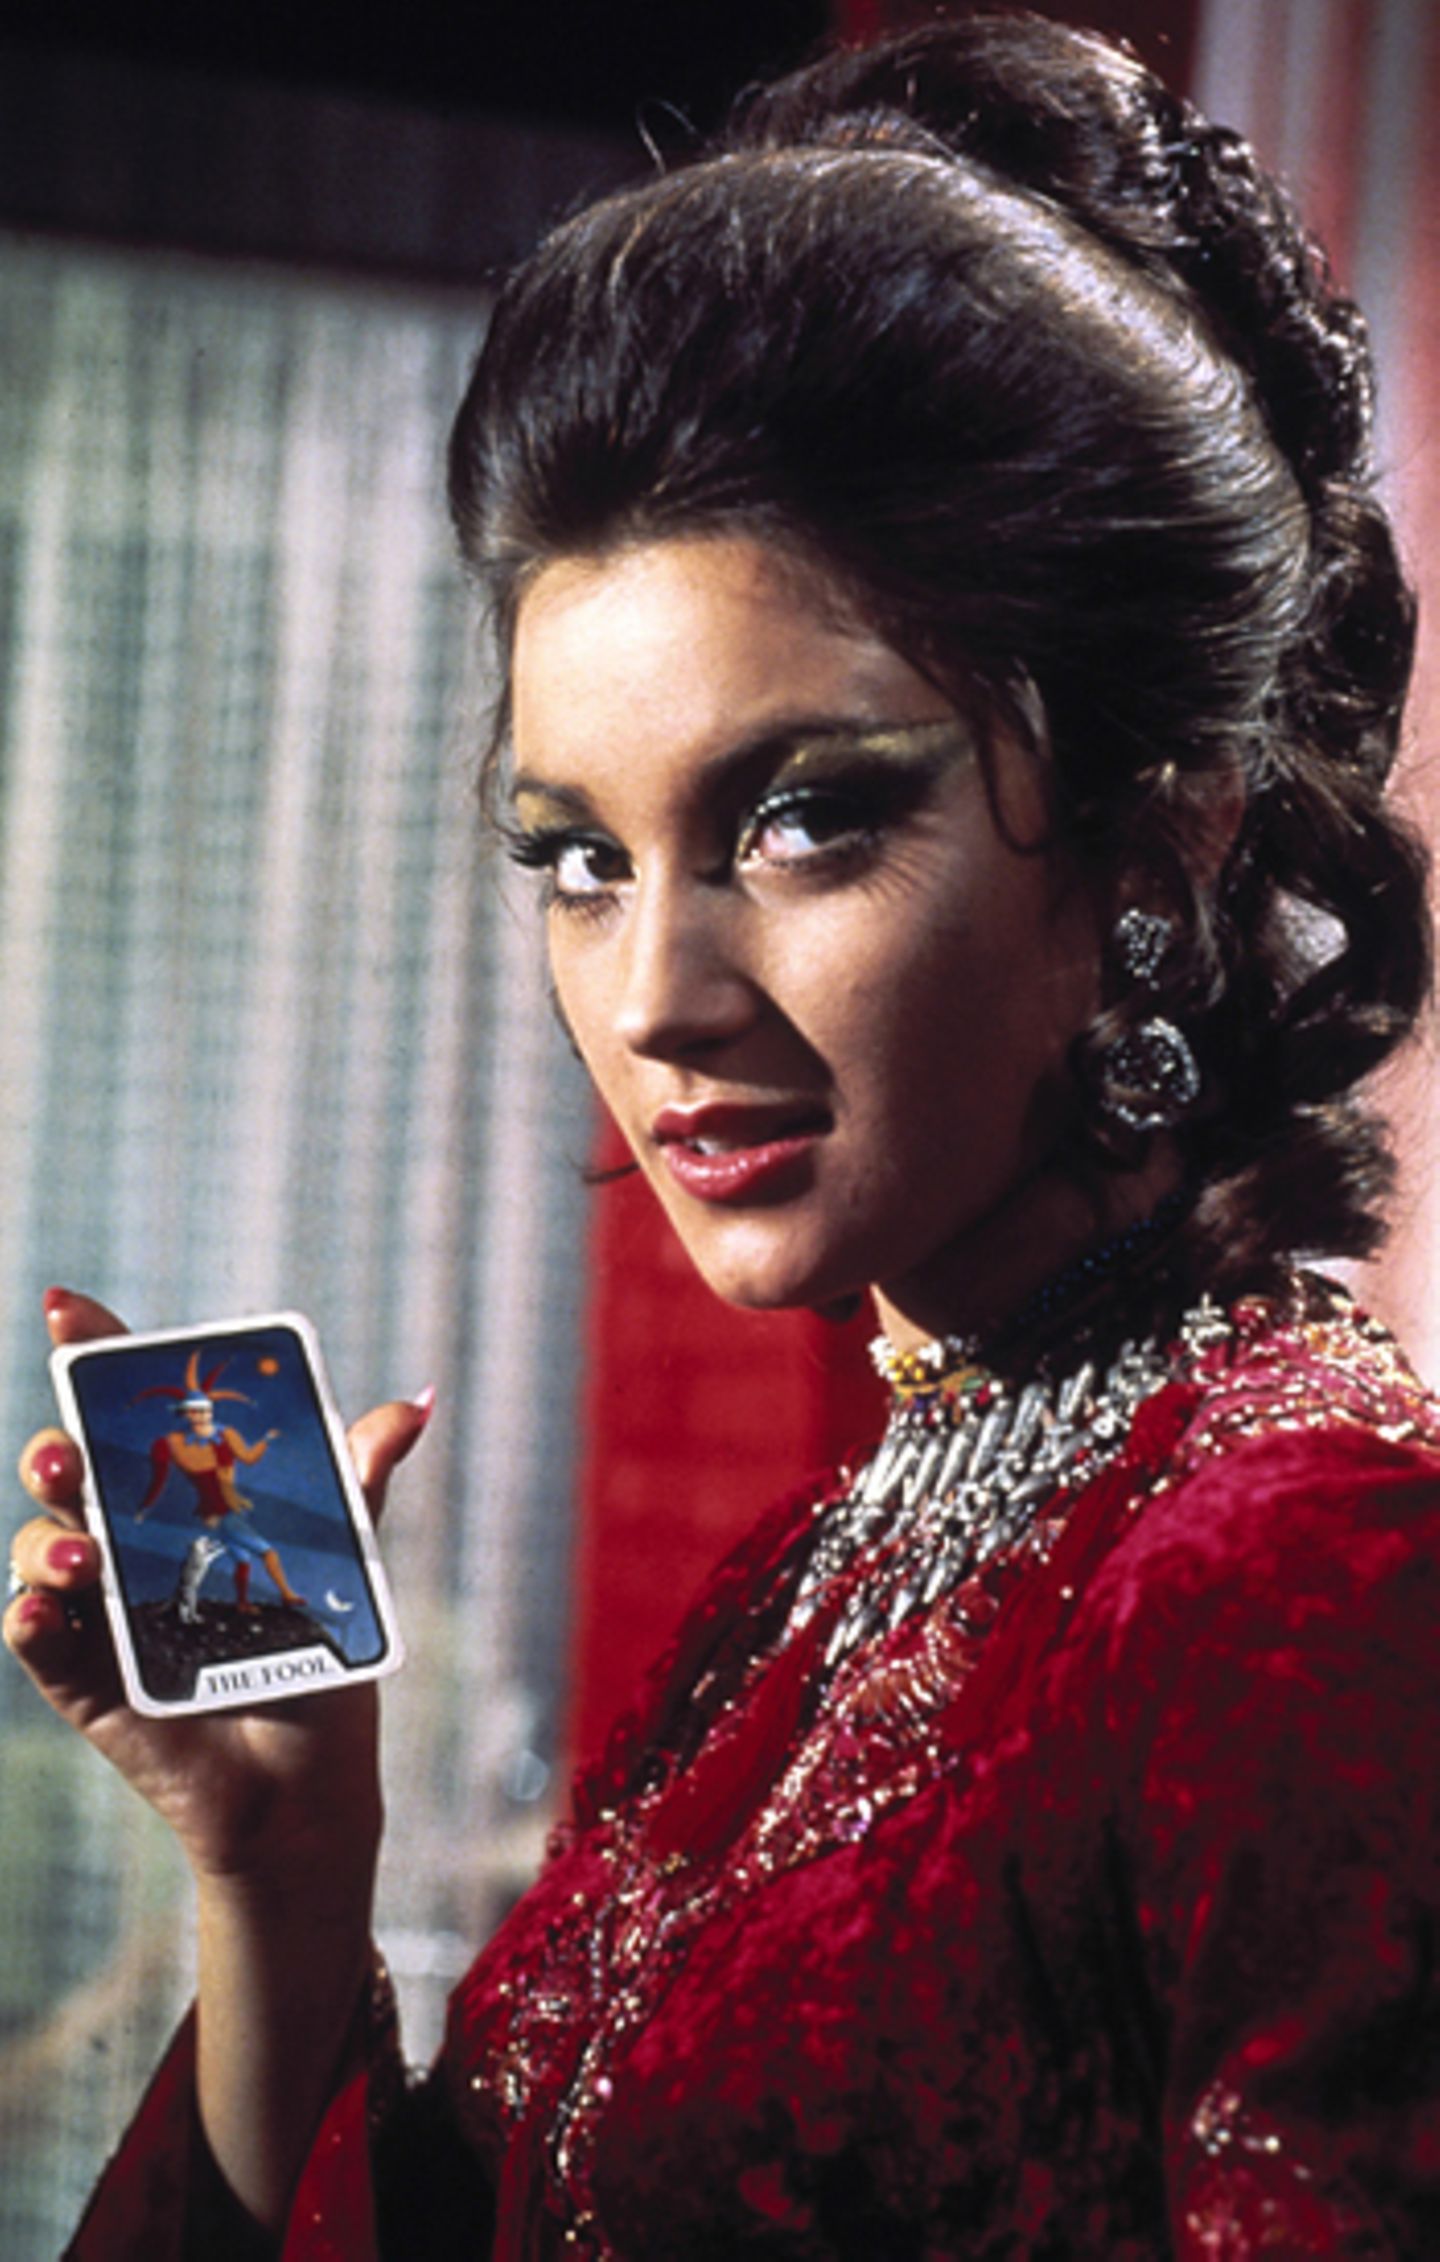 Bond Girls: Jane Seymour 1973 in "Leben und sterben lassen"